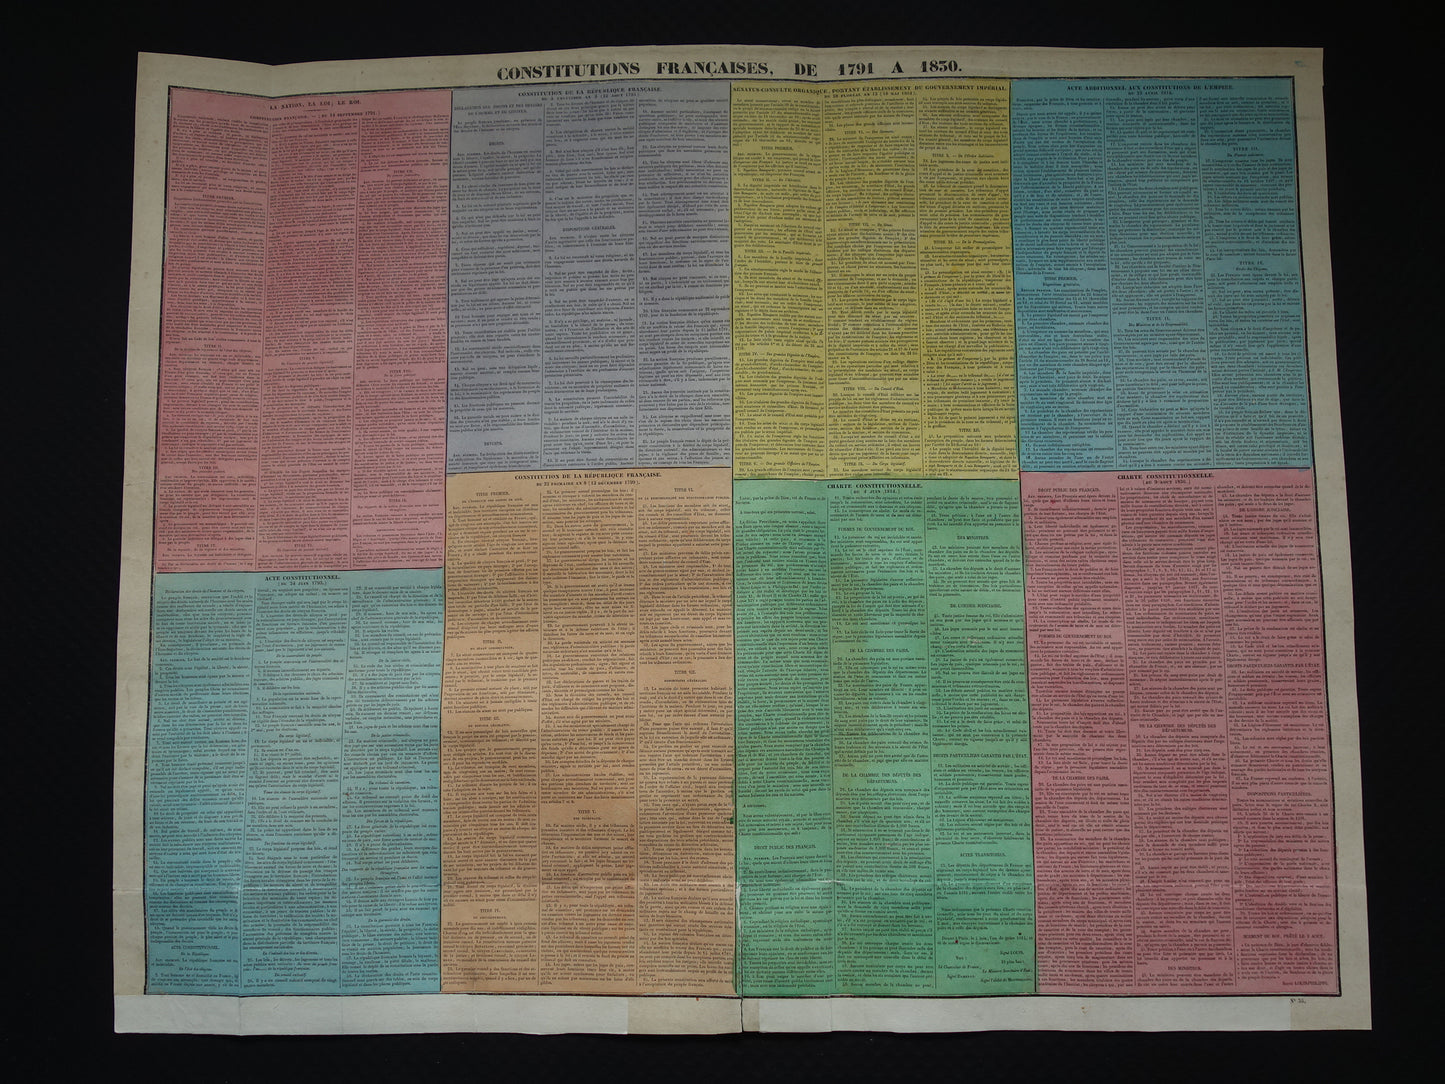 De Franse grondwet van 1791 tot 1830 Grote oude prent - Originele antieke print - Constitutions Francaises, de 1791 a 1830. Binet Goetschy